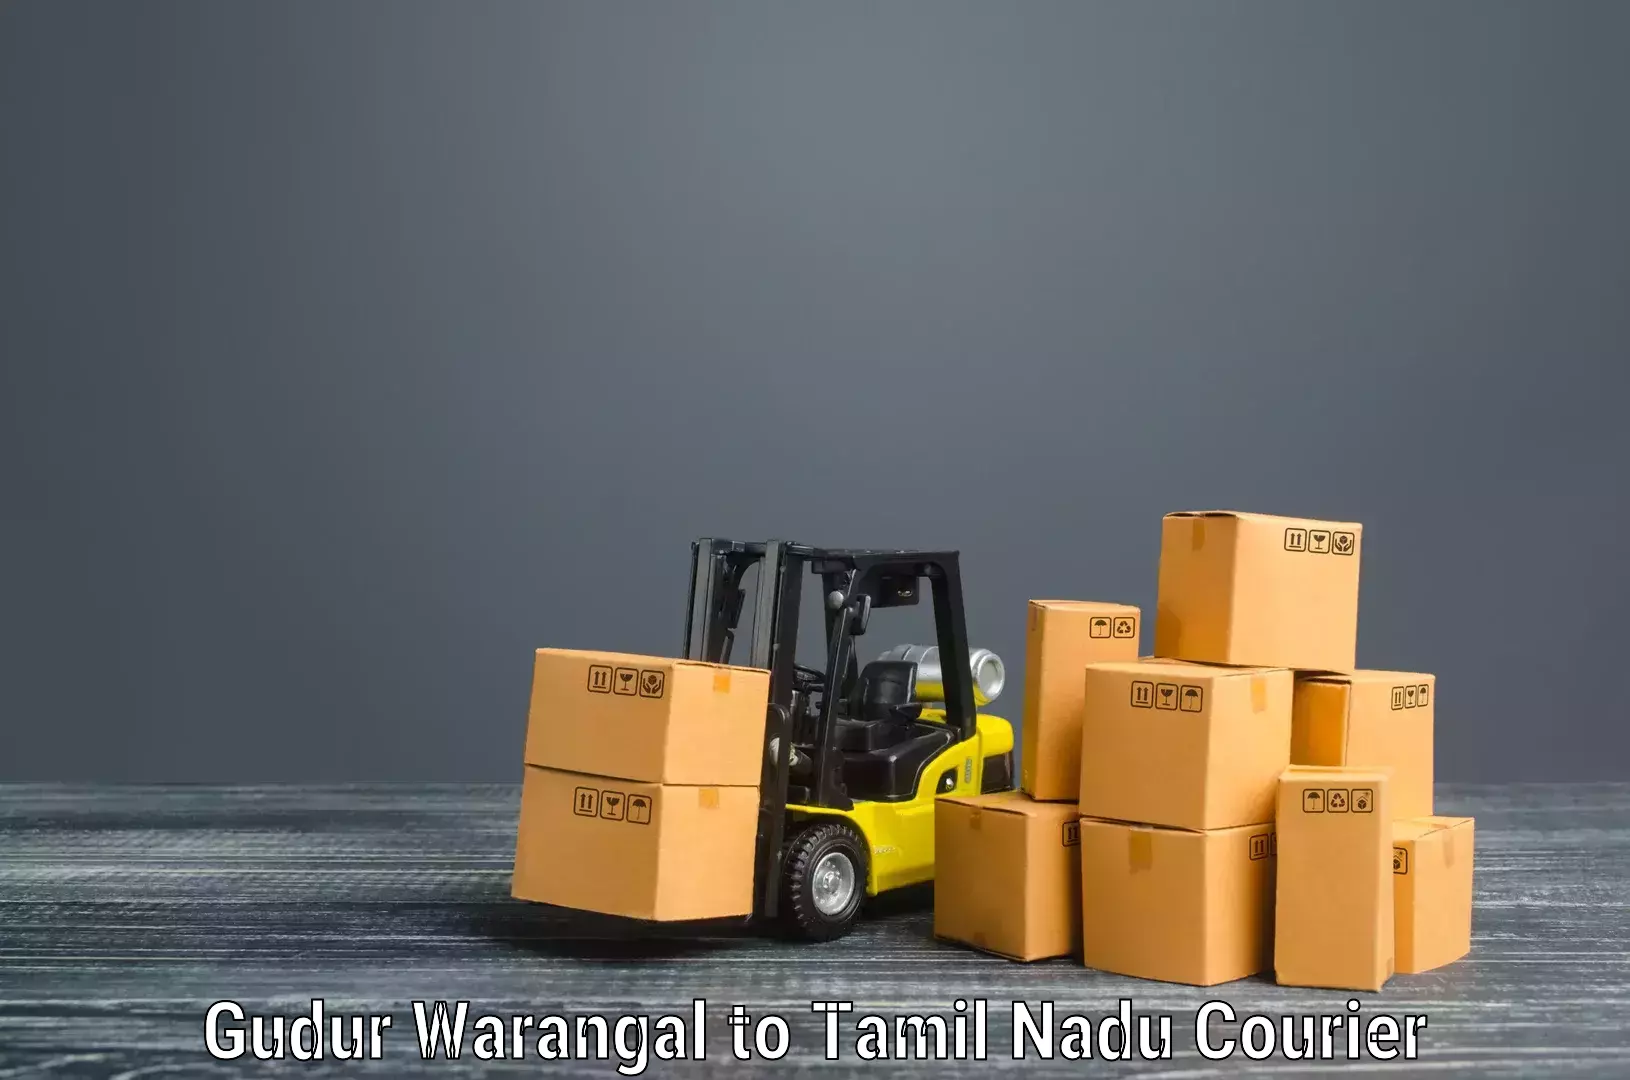 Household goods transport Gudur Warangal to Eraiyur